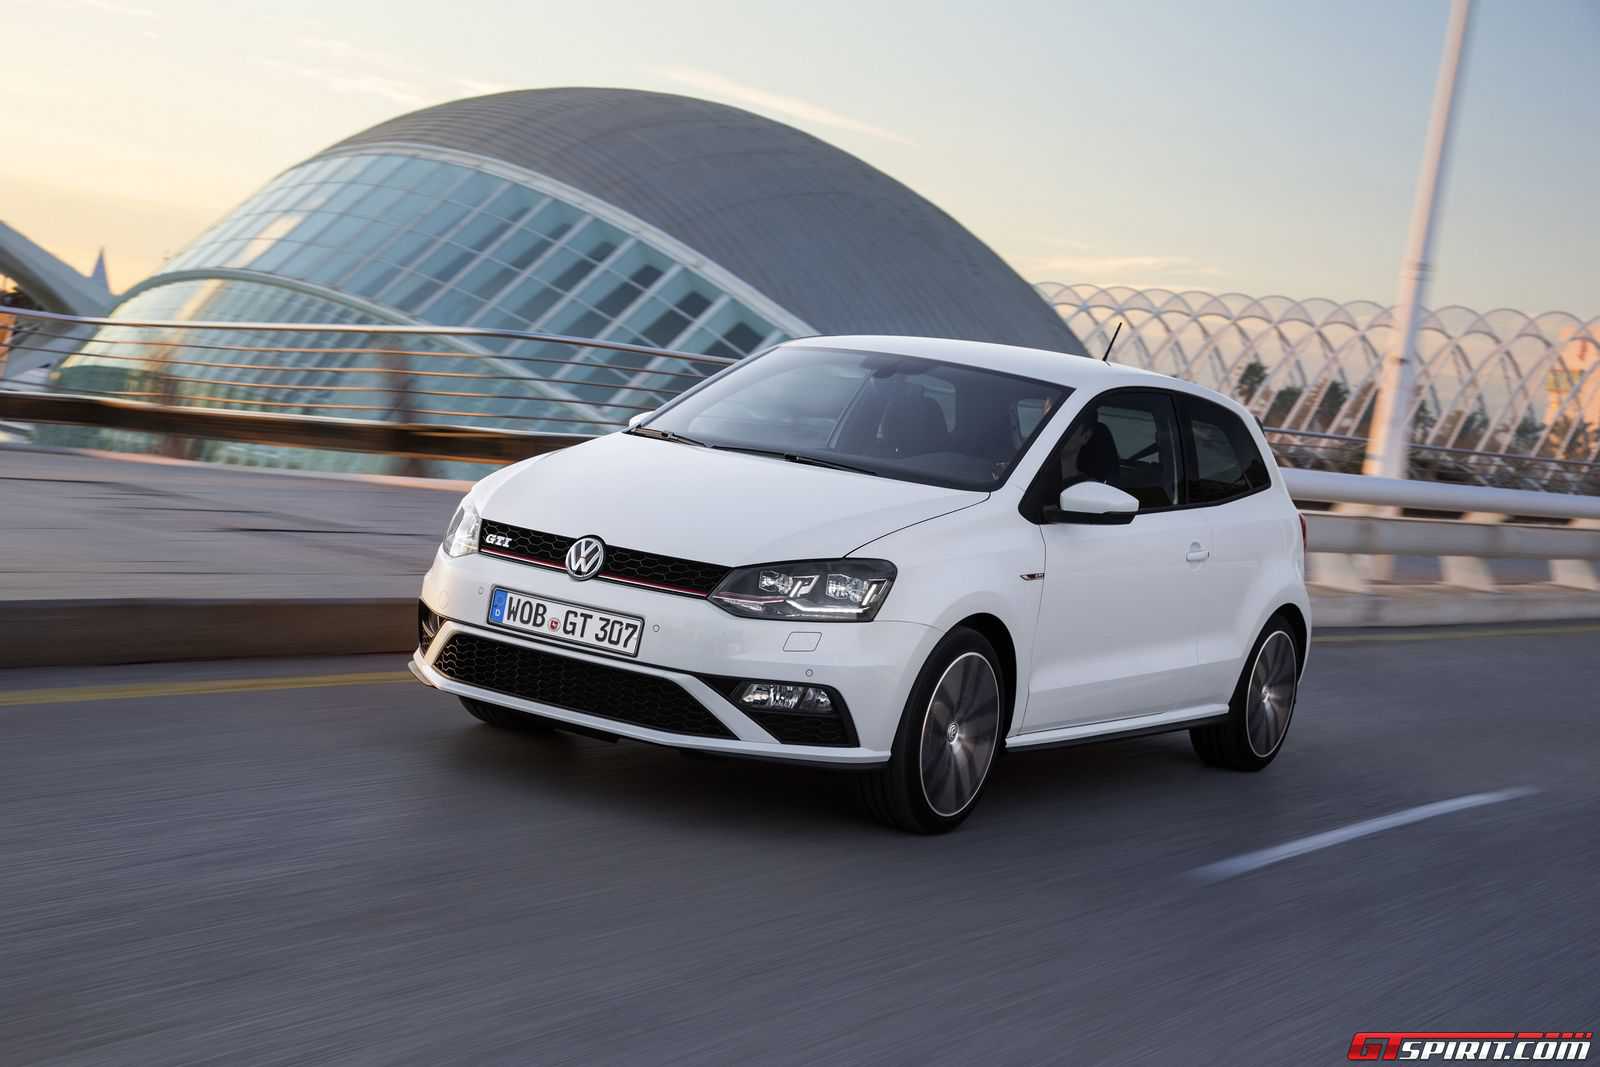 Belastingbetaler Verzoenen moeilijk 2015 Volkswagen Polo GTI Review - GTspirit